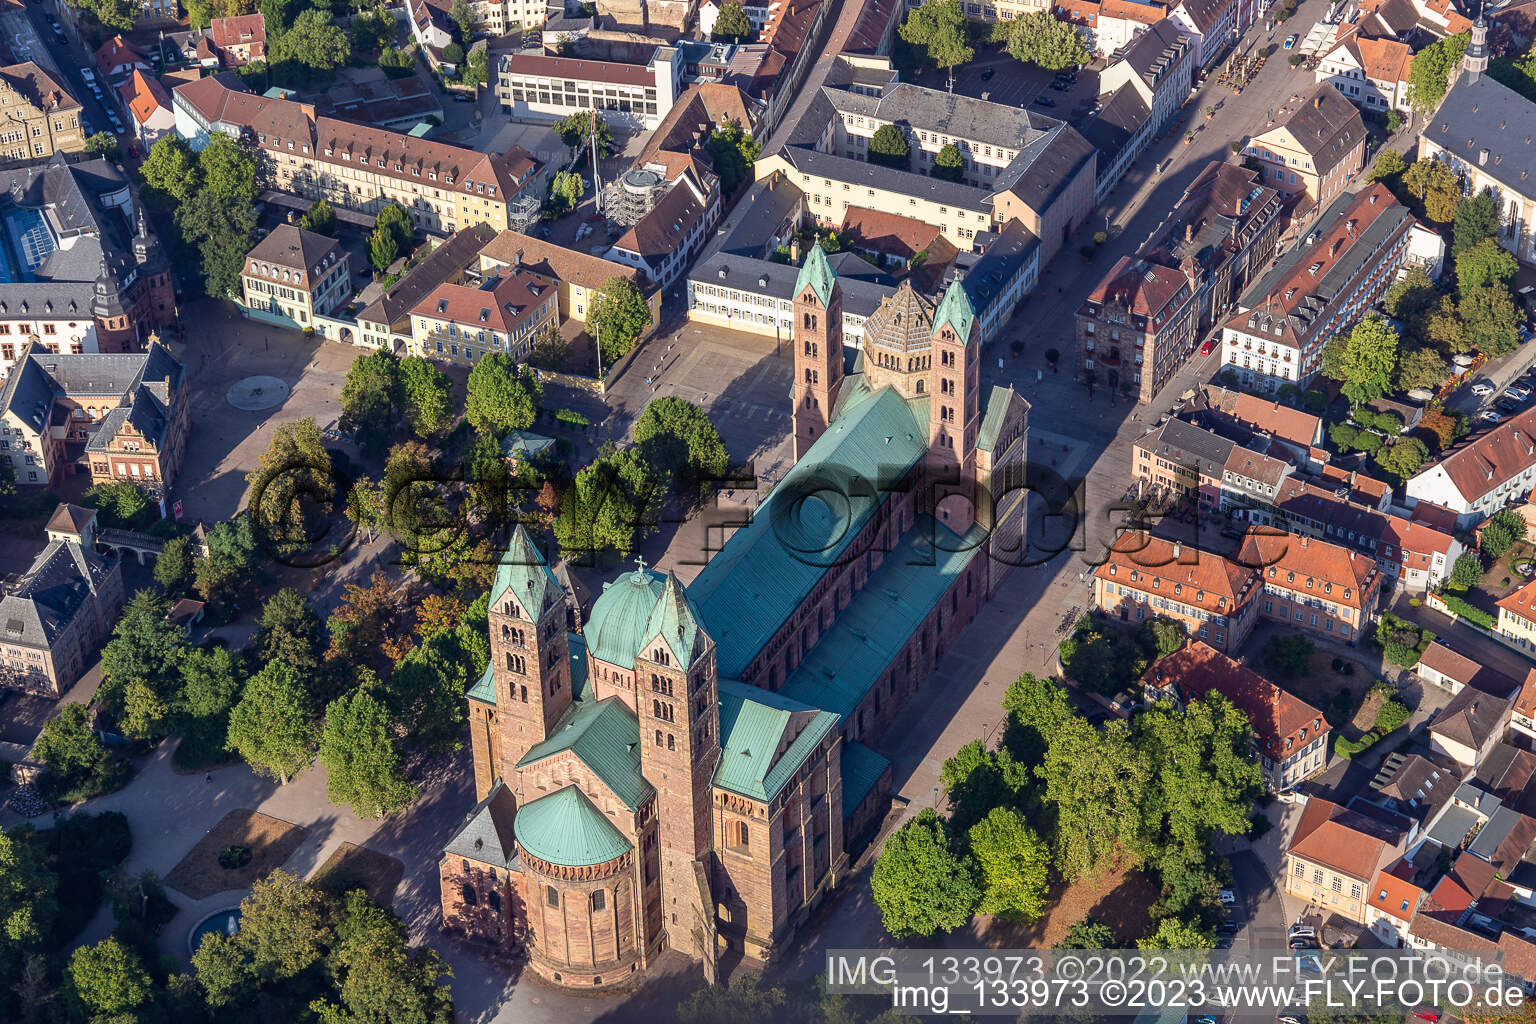 Dom zu Speyer im Bundesland Rheinland-Pfalz, Deutschland von oben gesehen